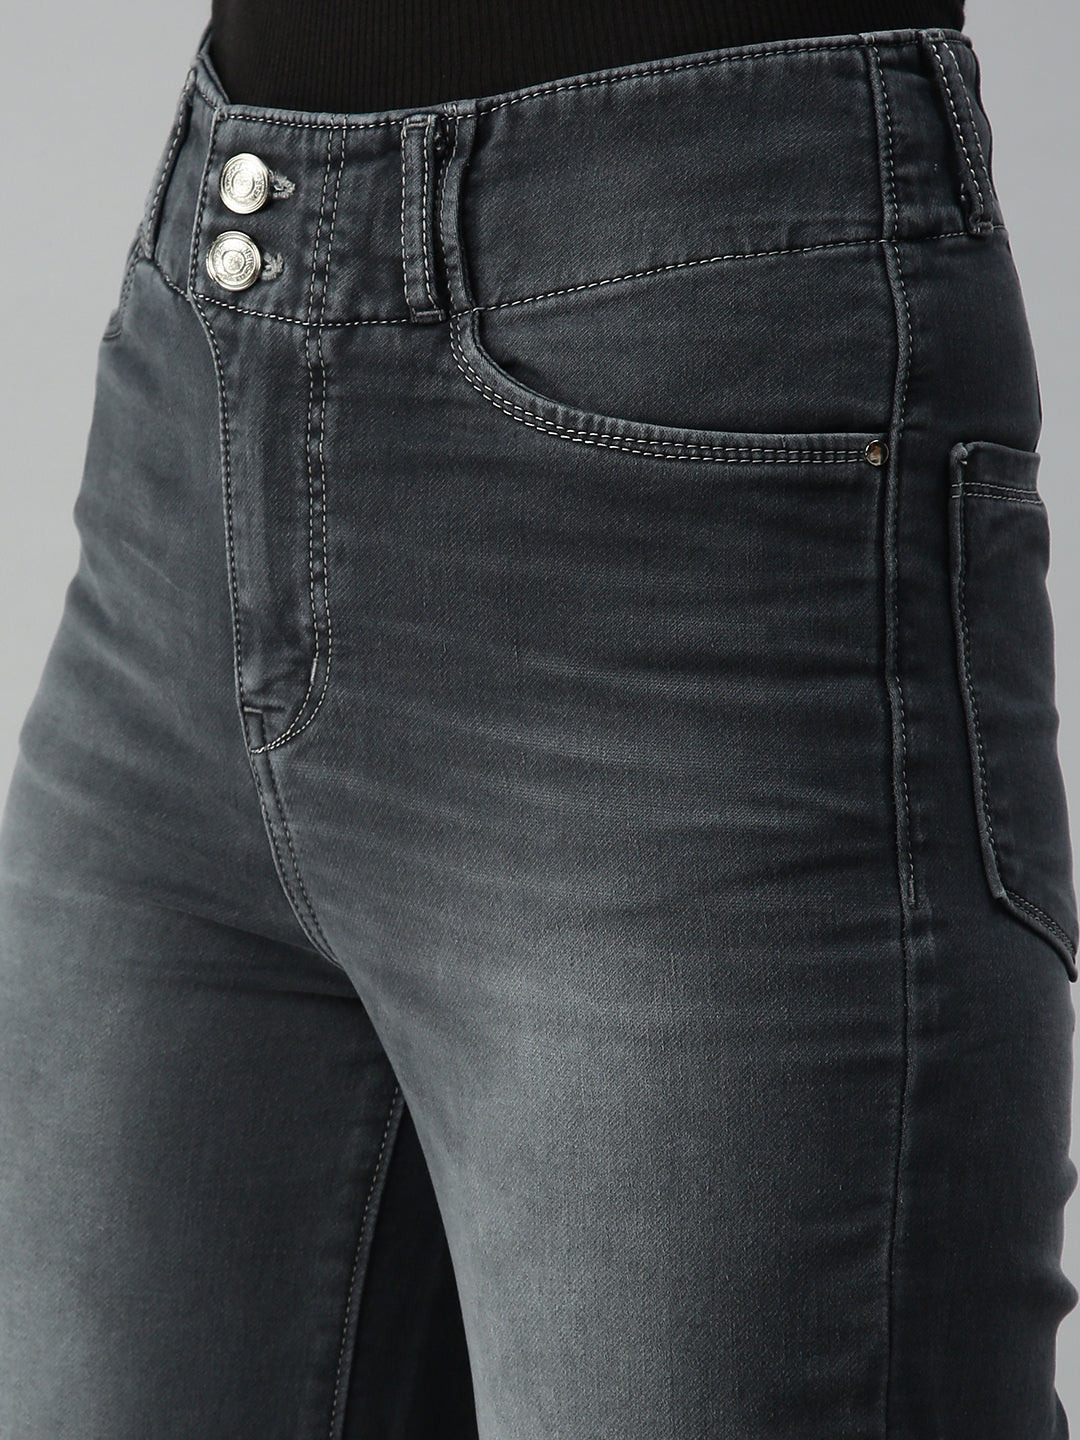 Women's Grey Solid Denim Wide Leg Jeans